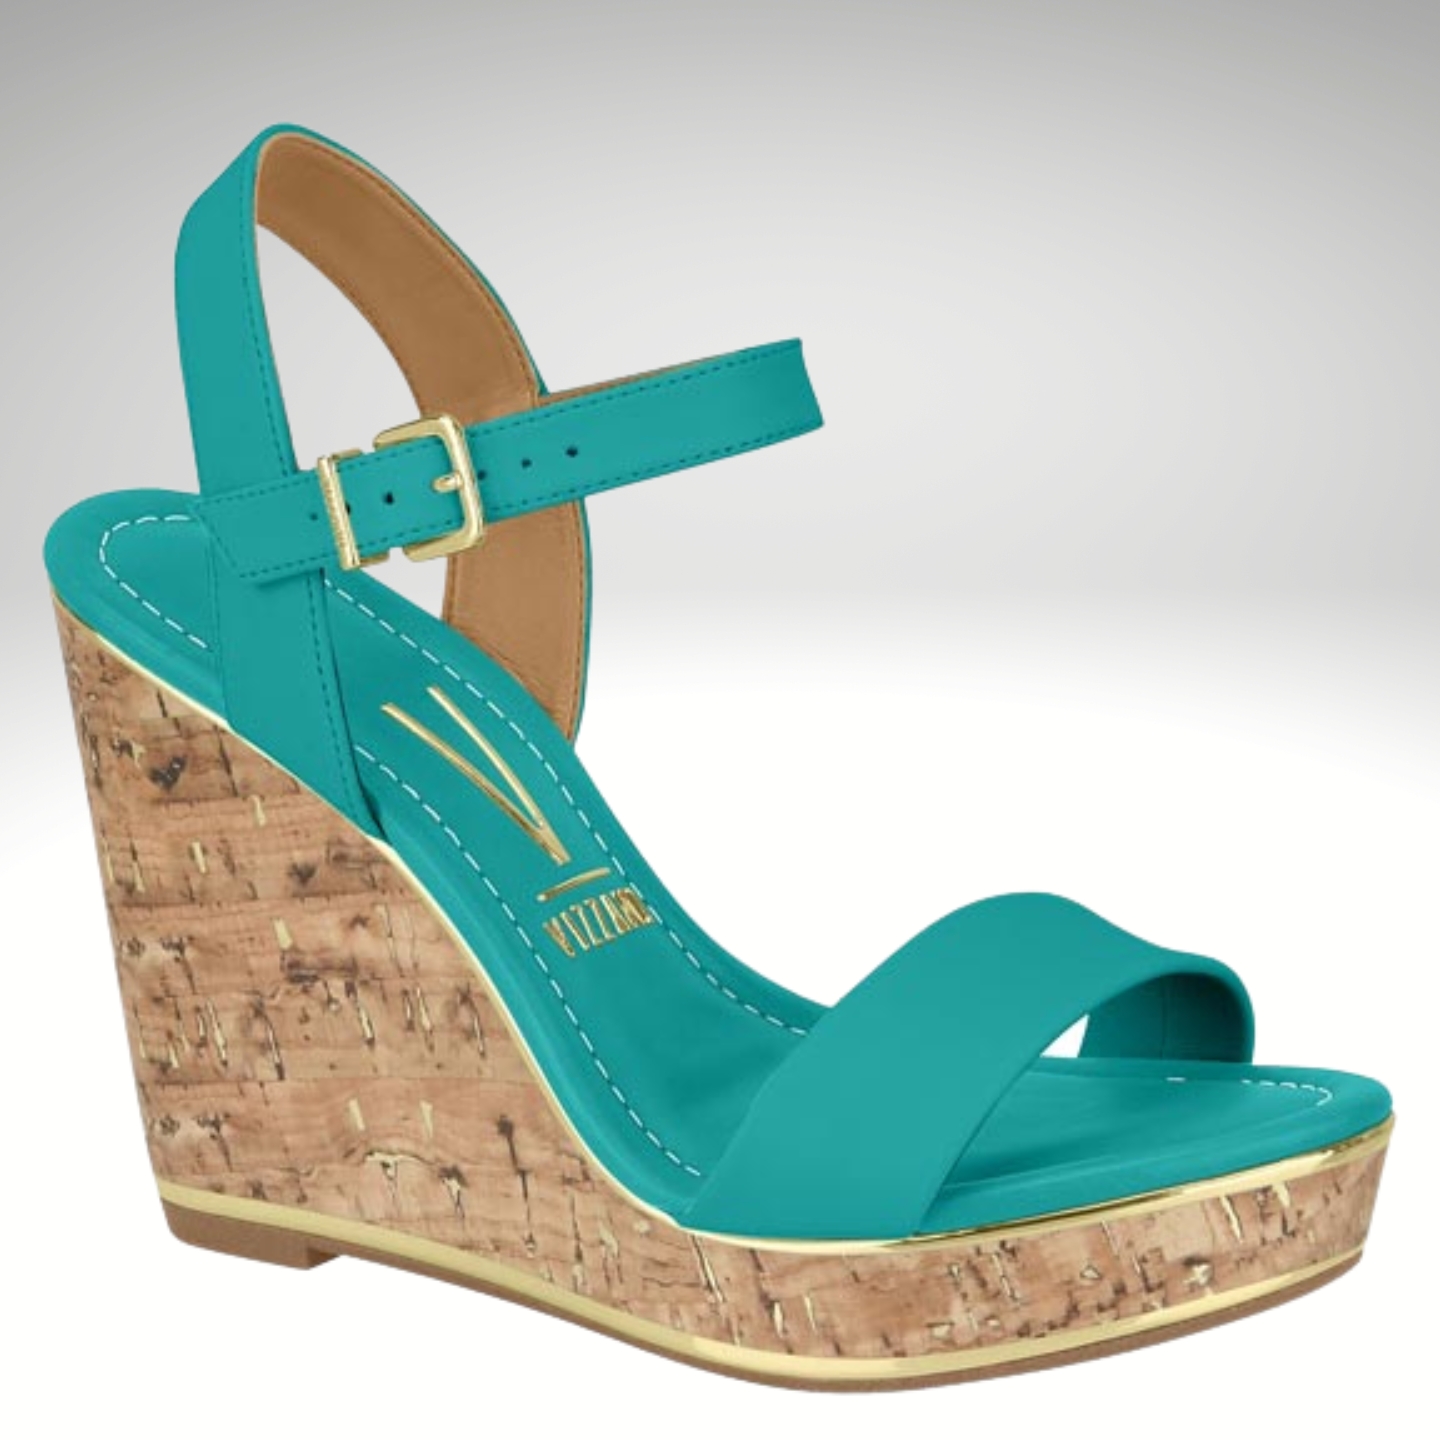 2723-76-005 – Turquoise sleehakken met gouden details – Turquoise sandalen met sleehak